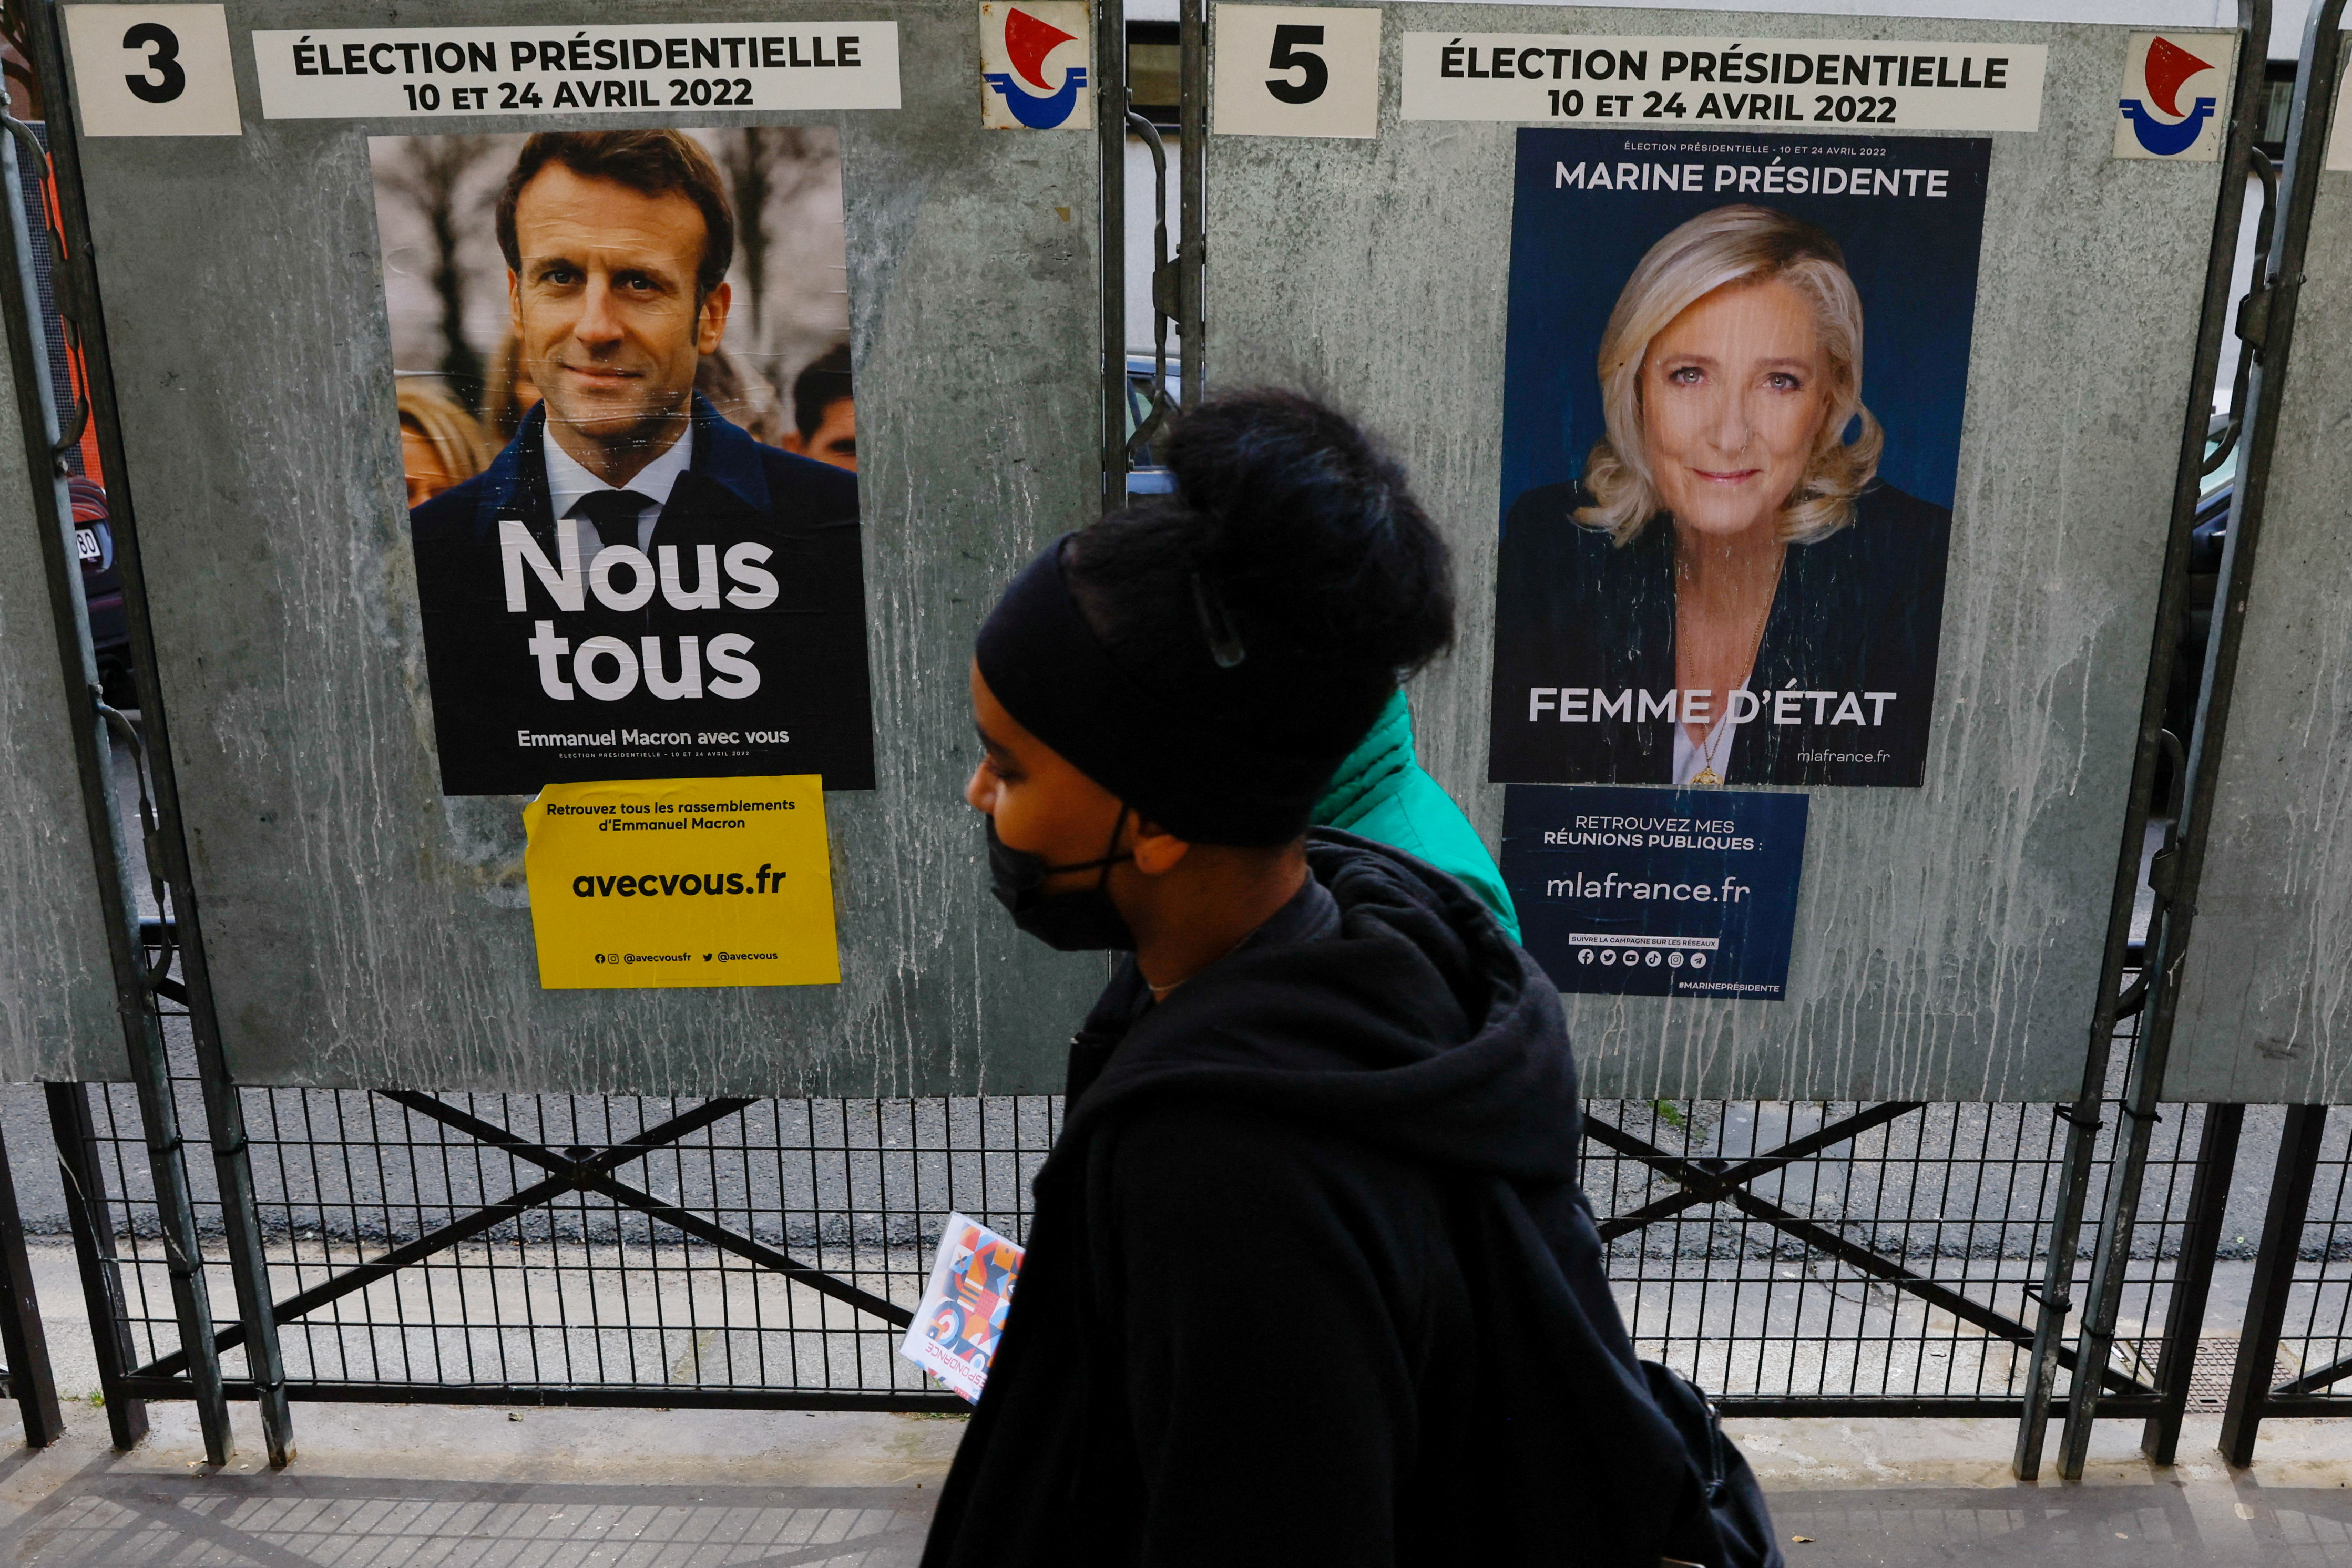 Nunca la extrema derecha, al menos muestran los sondeos, estuvo tan cerca del Palacio del Elíseo. Emmanuel Macron y Marine Le Pen acercan diferencias, para unas elecciones claves para Francia y Europa.